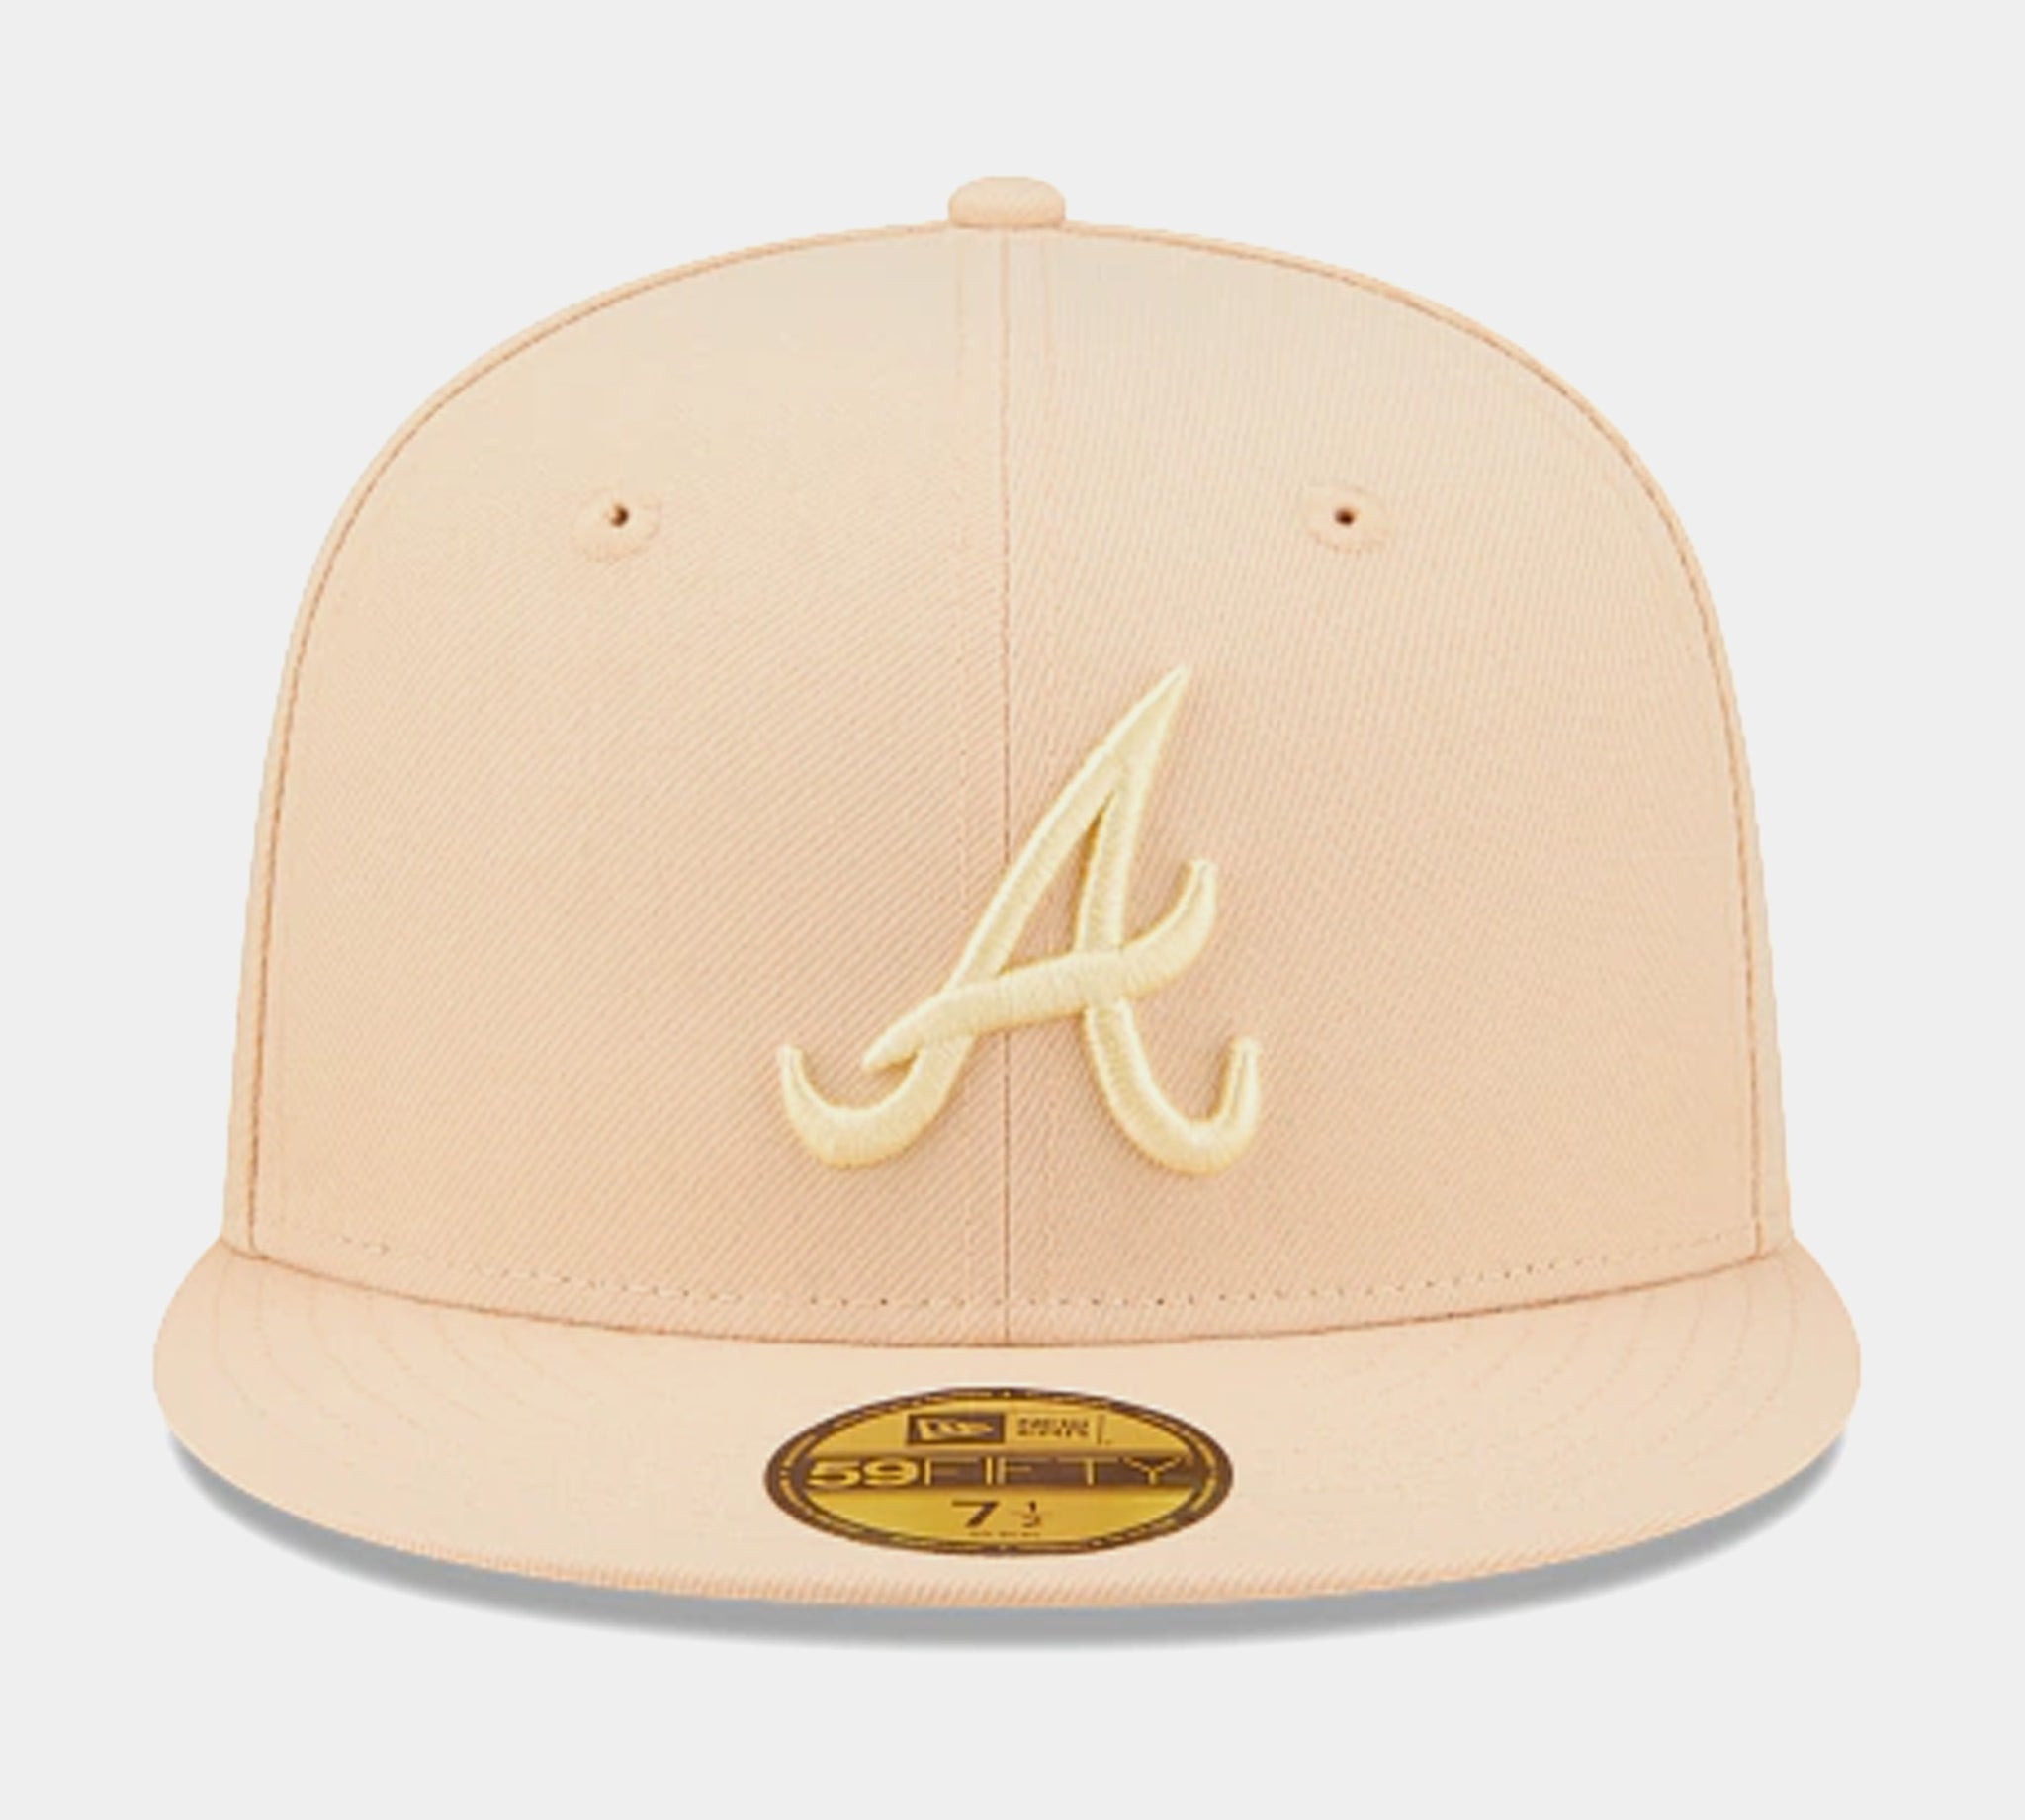 Atlanta Braves Kippah – The Emblem Source